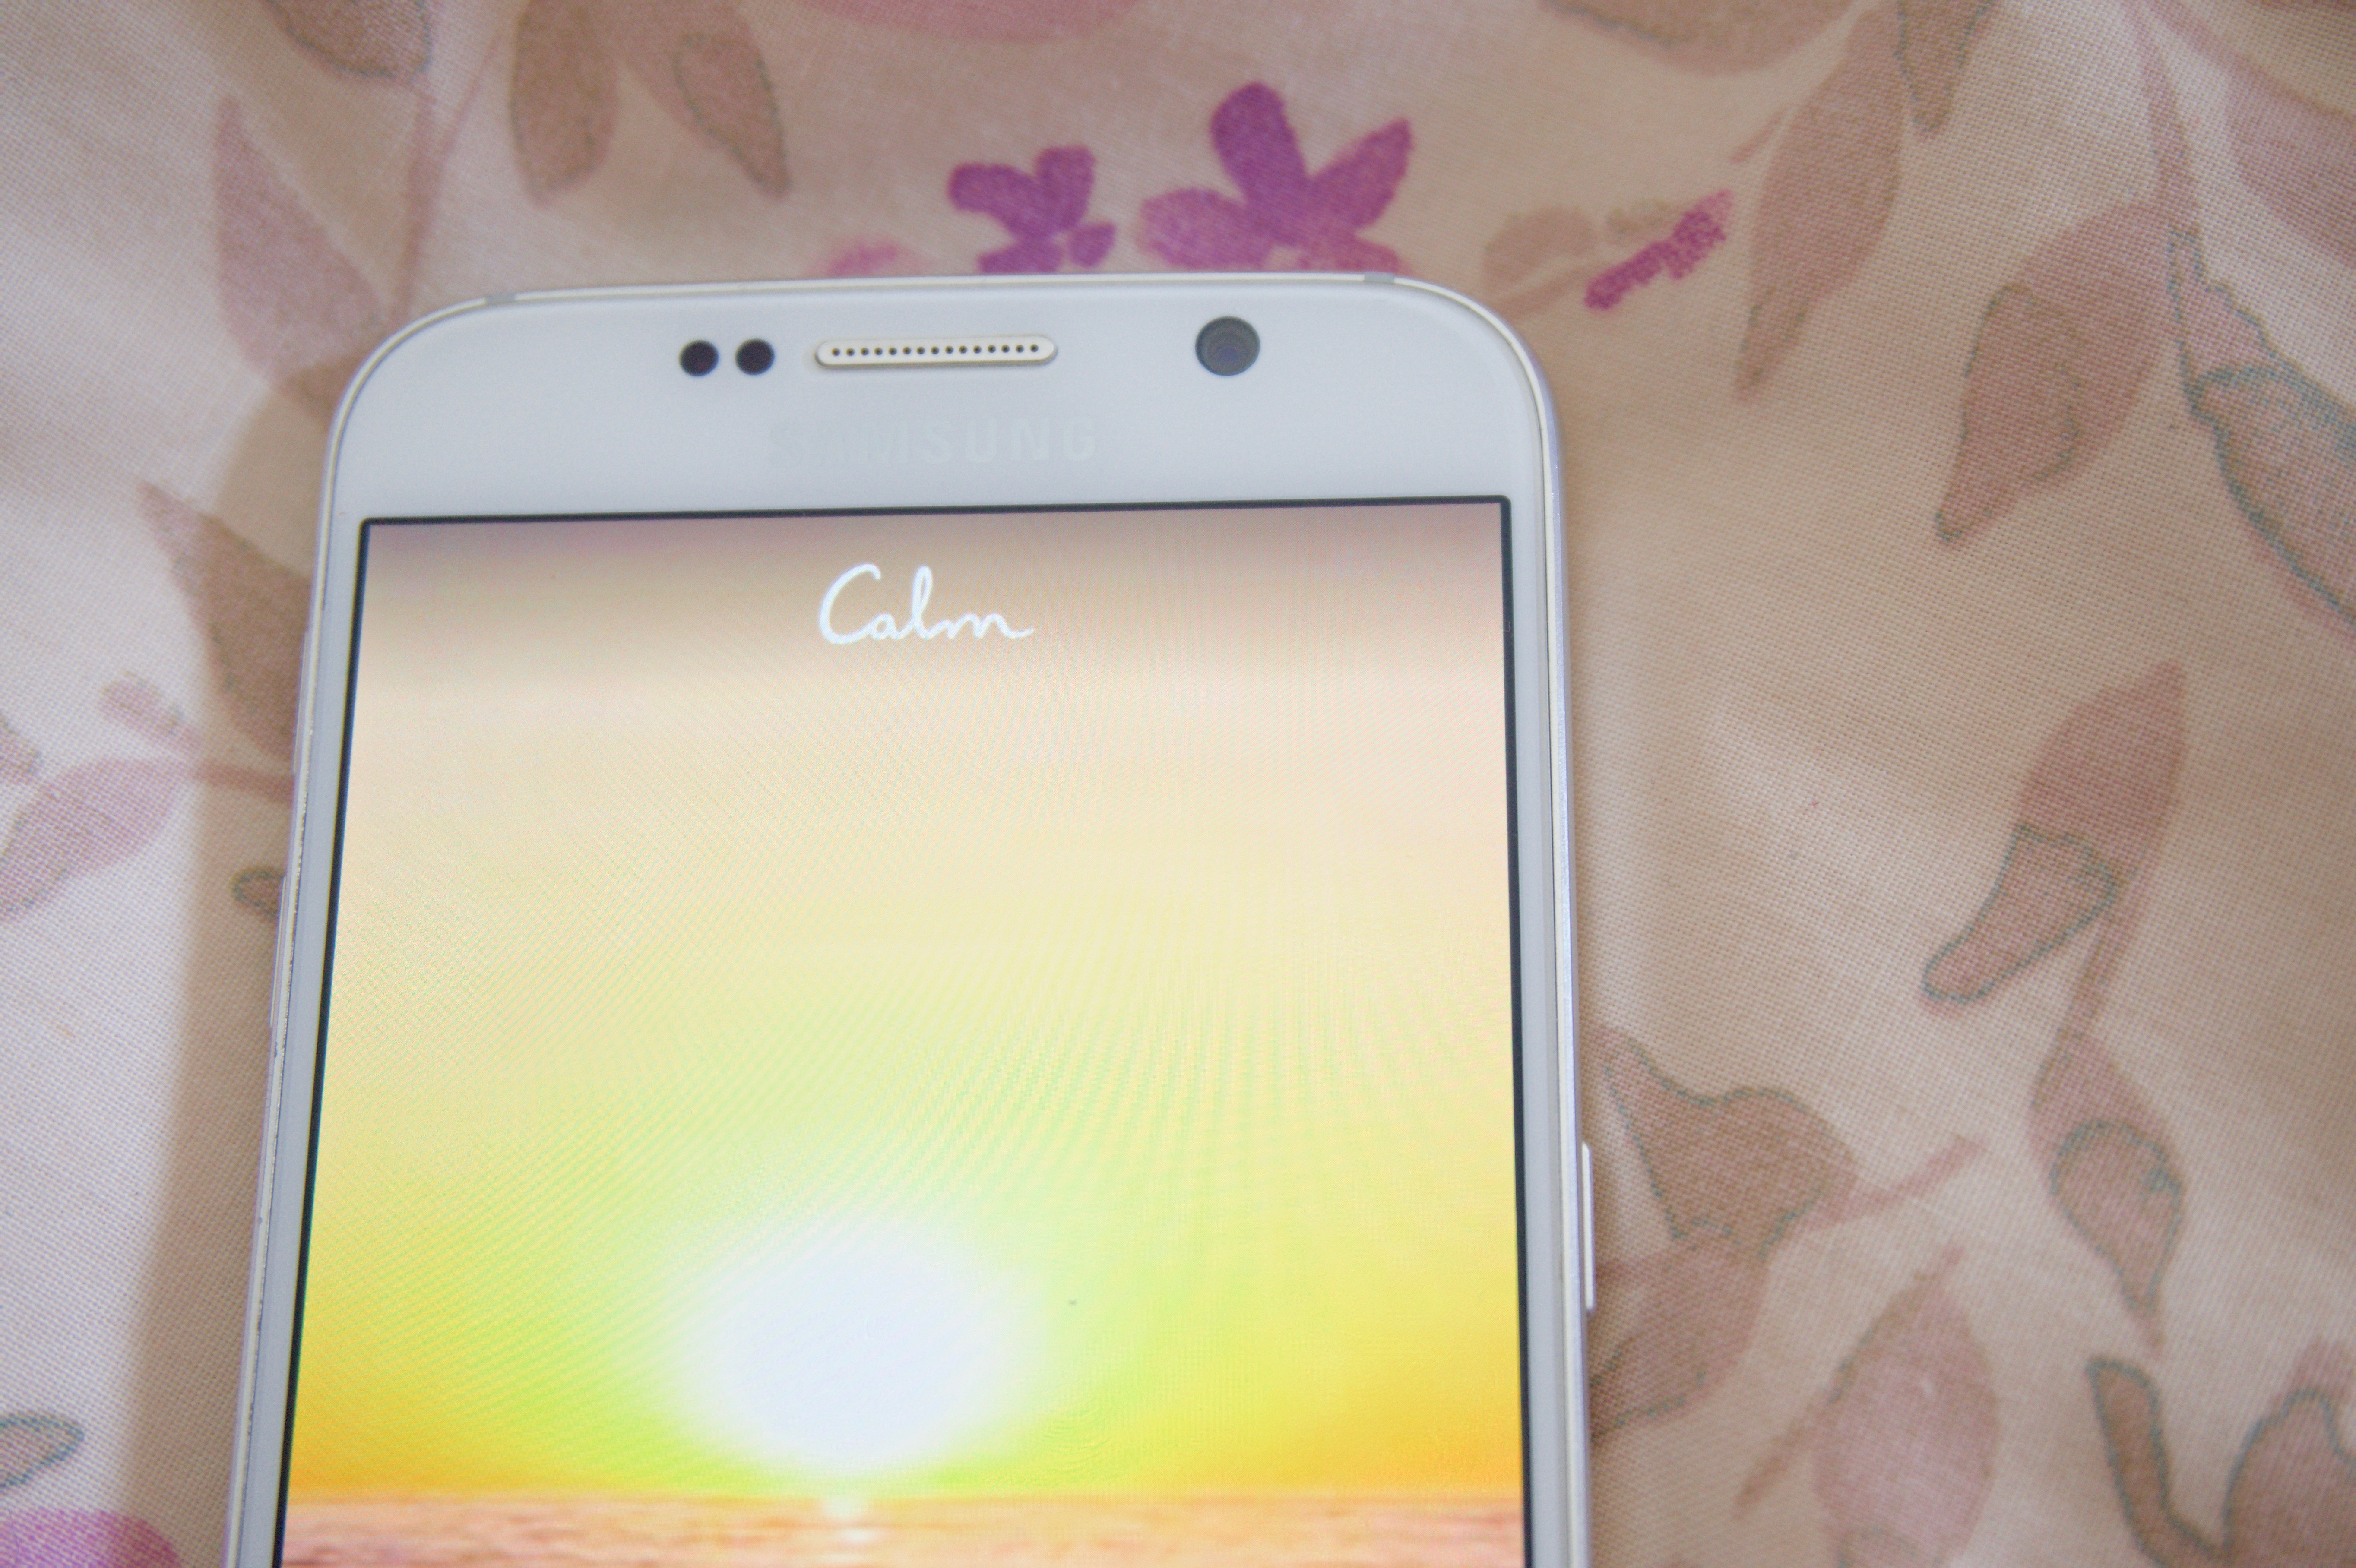 Calm app on my Samsung Galaxy S6